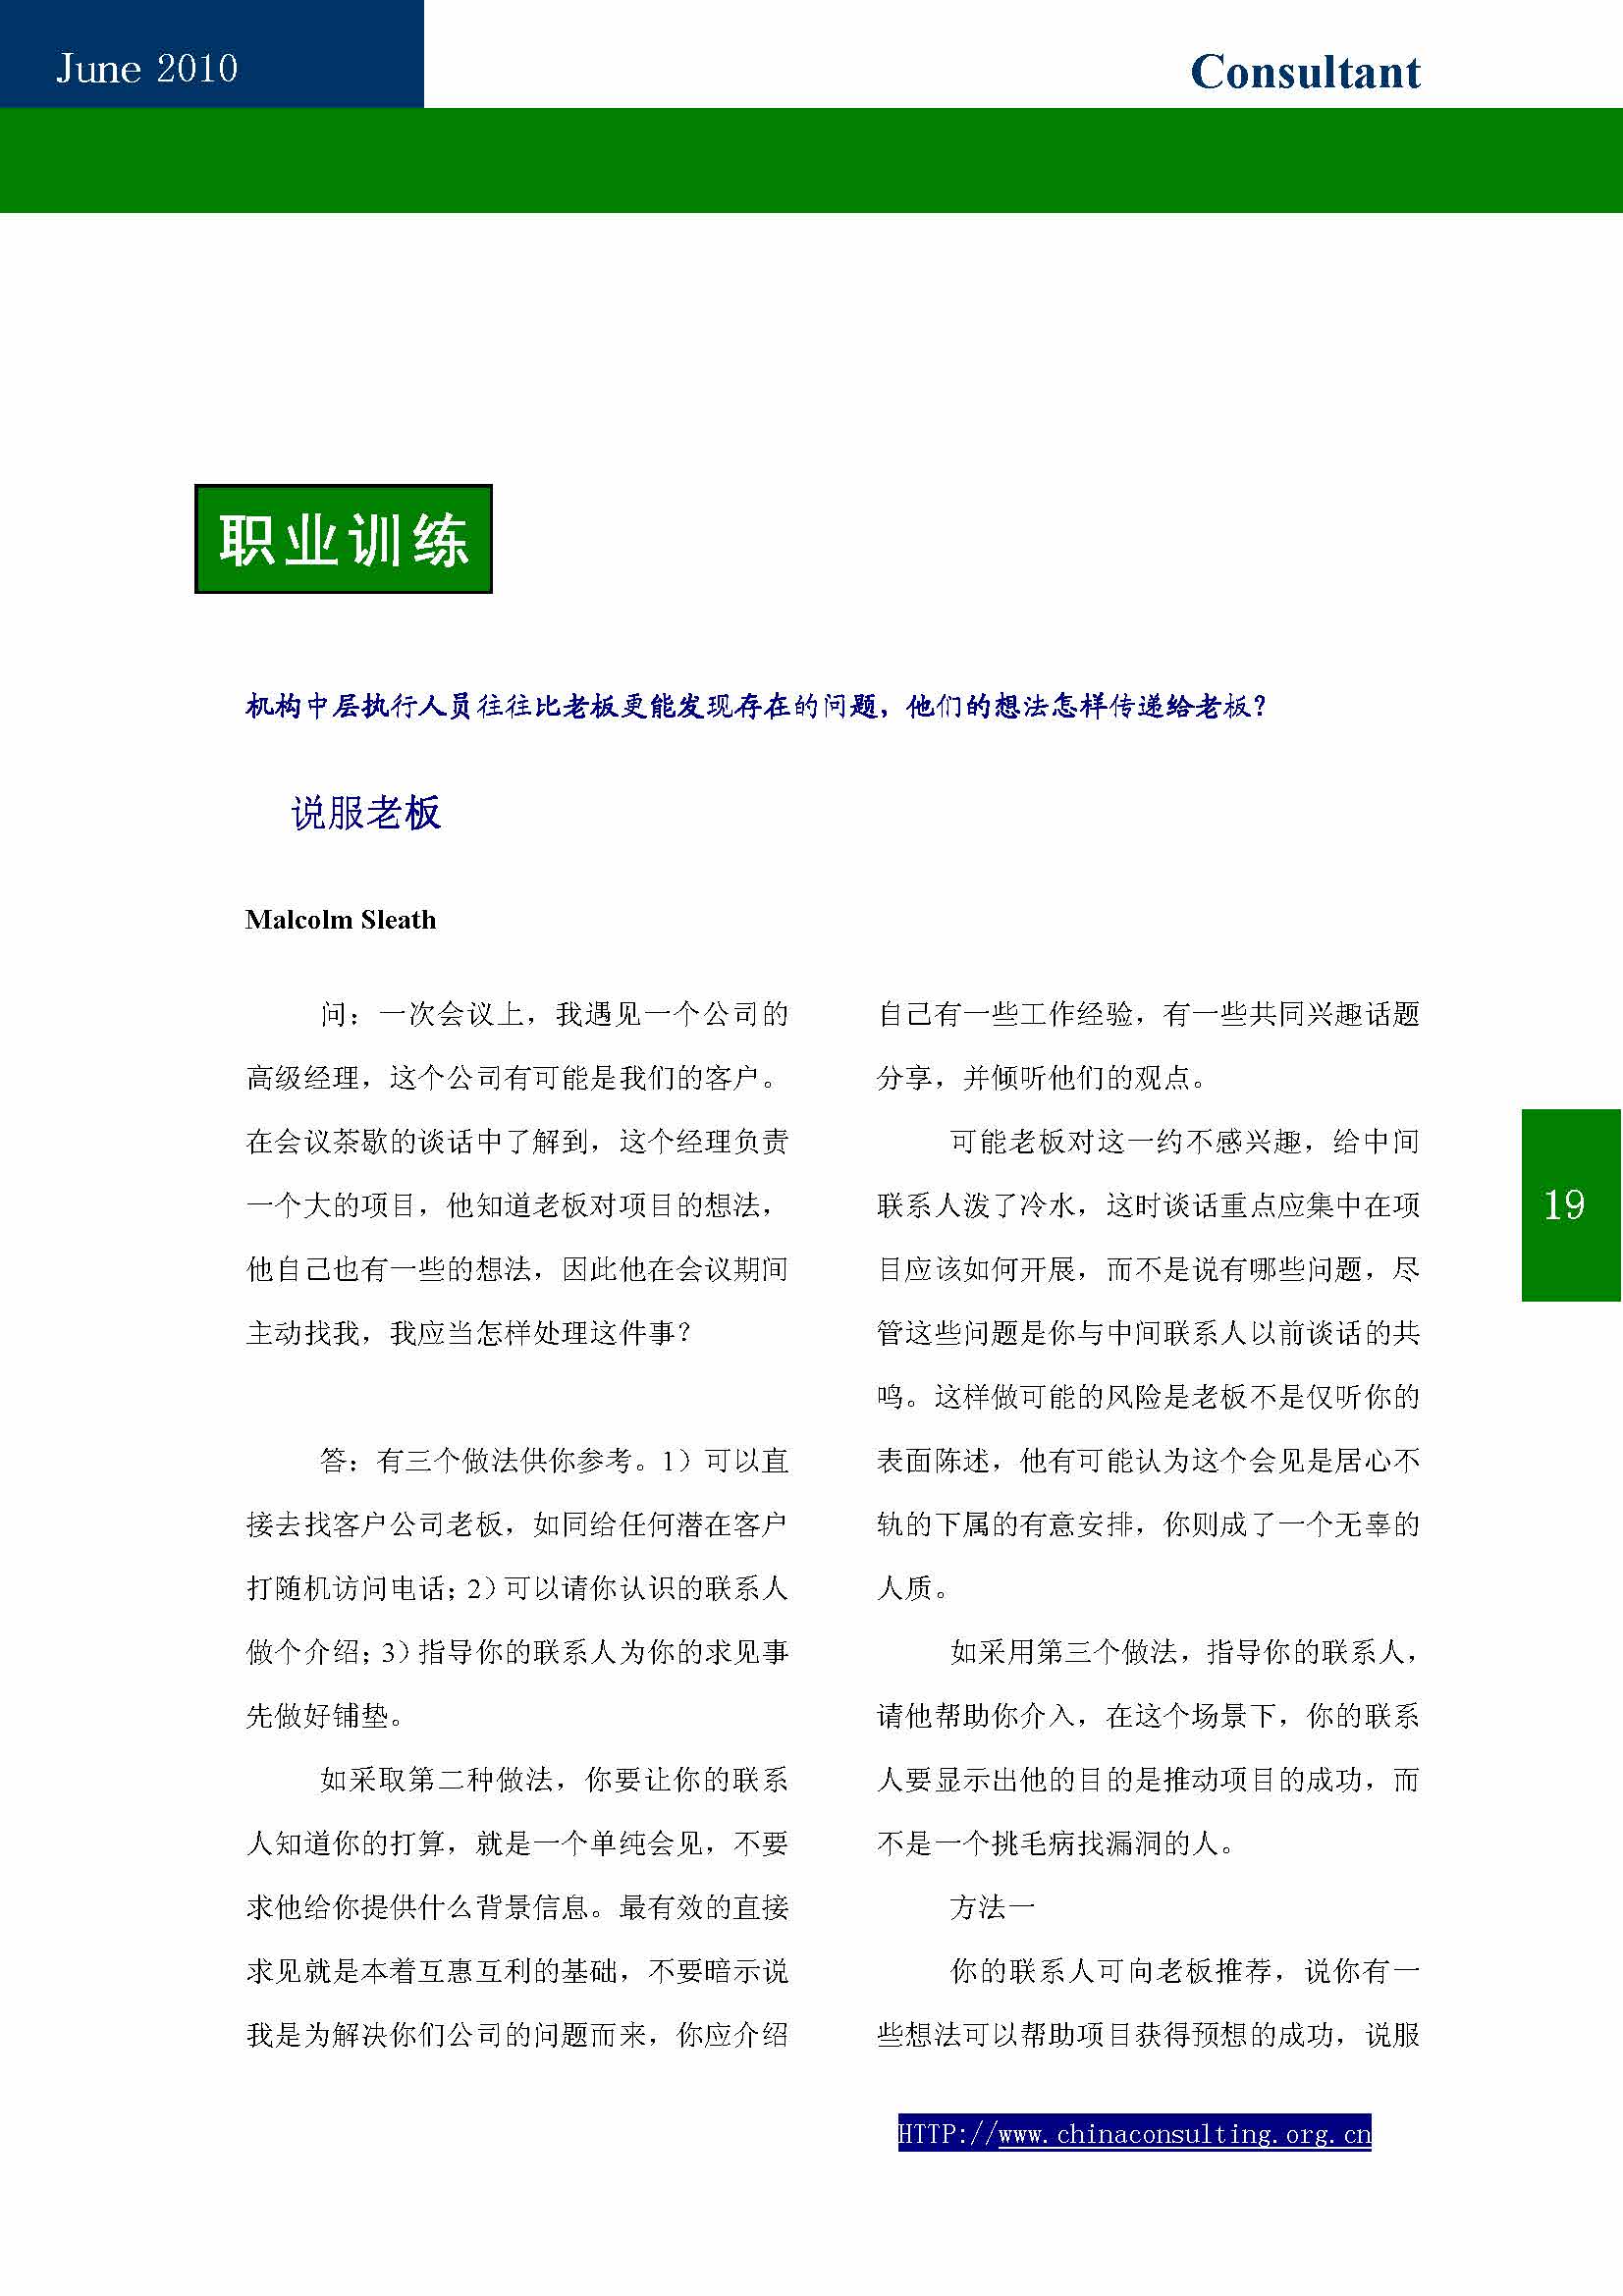 10中国科技咨询协会第十期会刊_页面_21.jpg